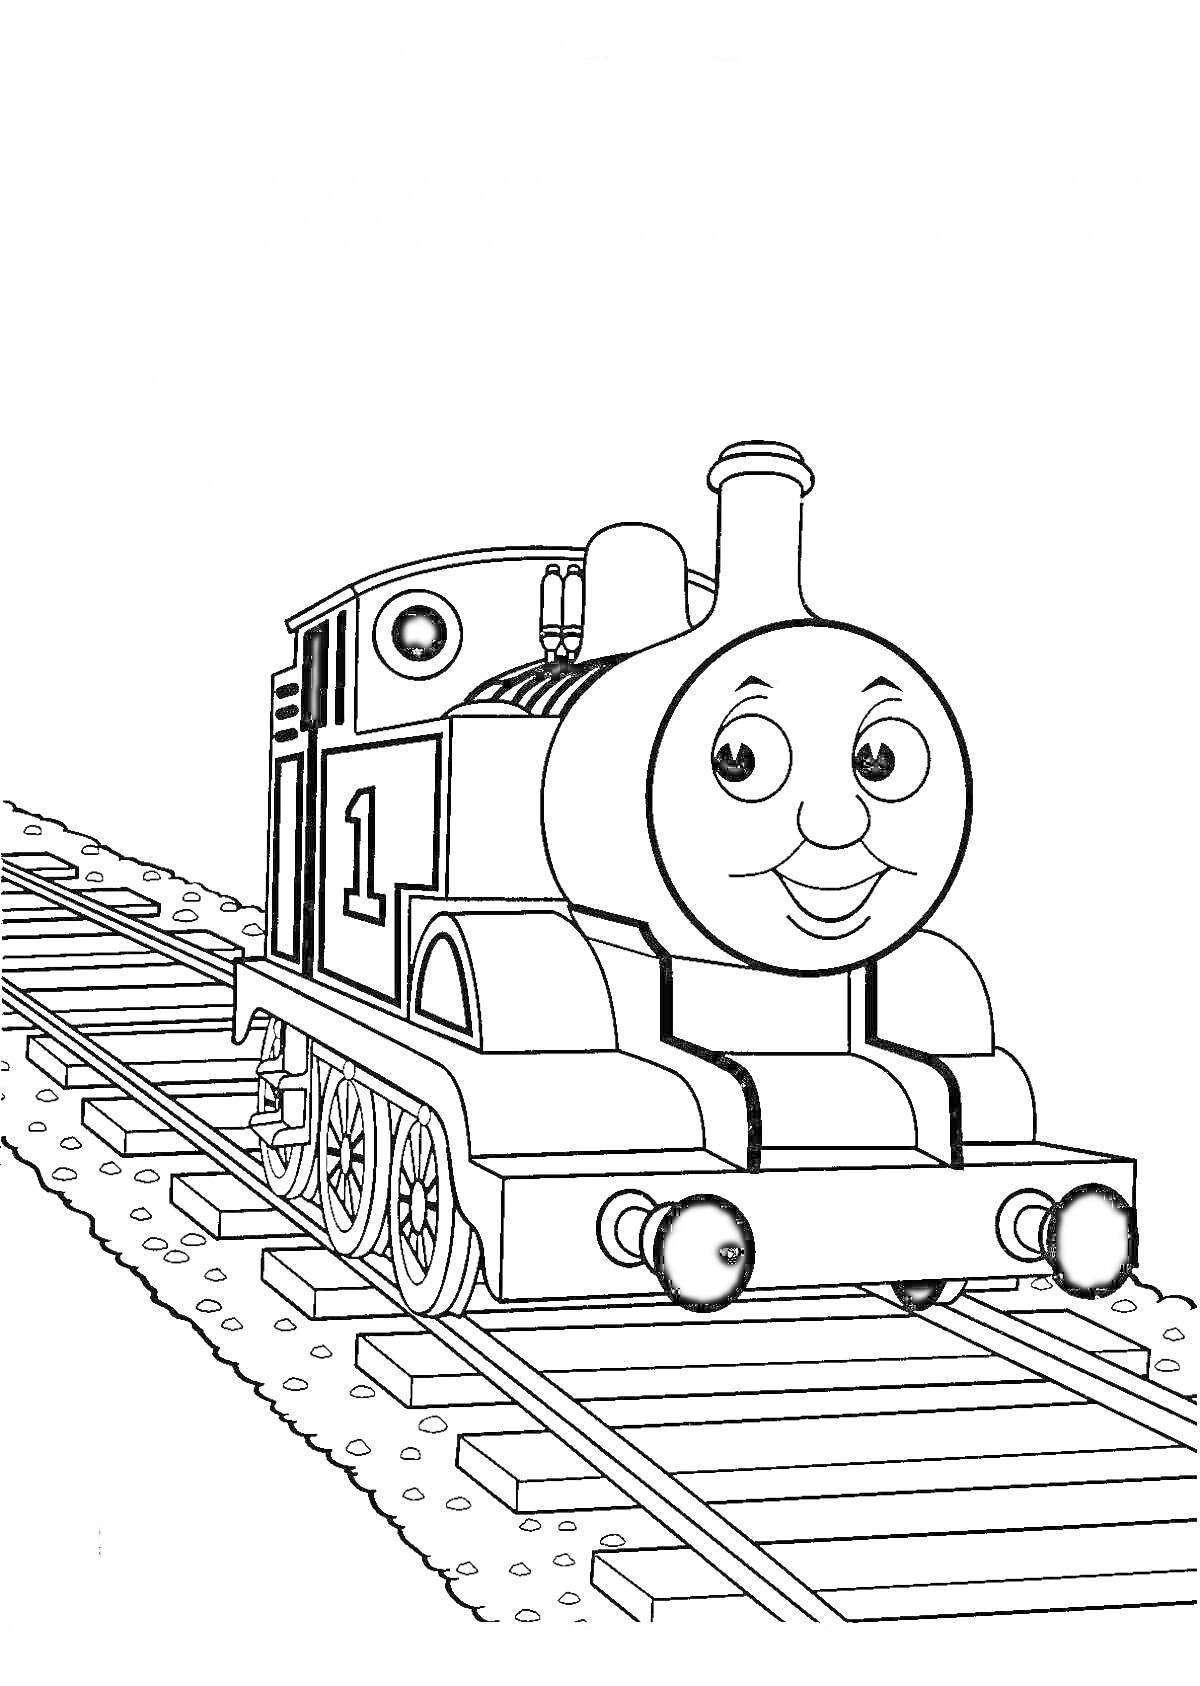 Раскраска Паровозик Томас на железной дороге